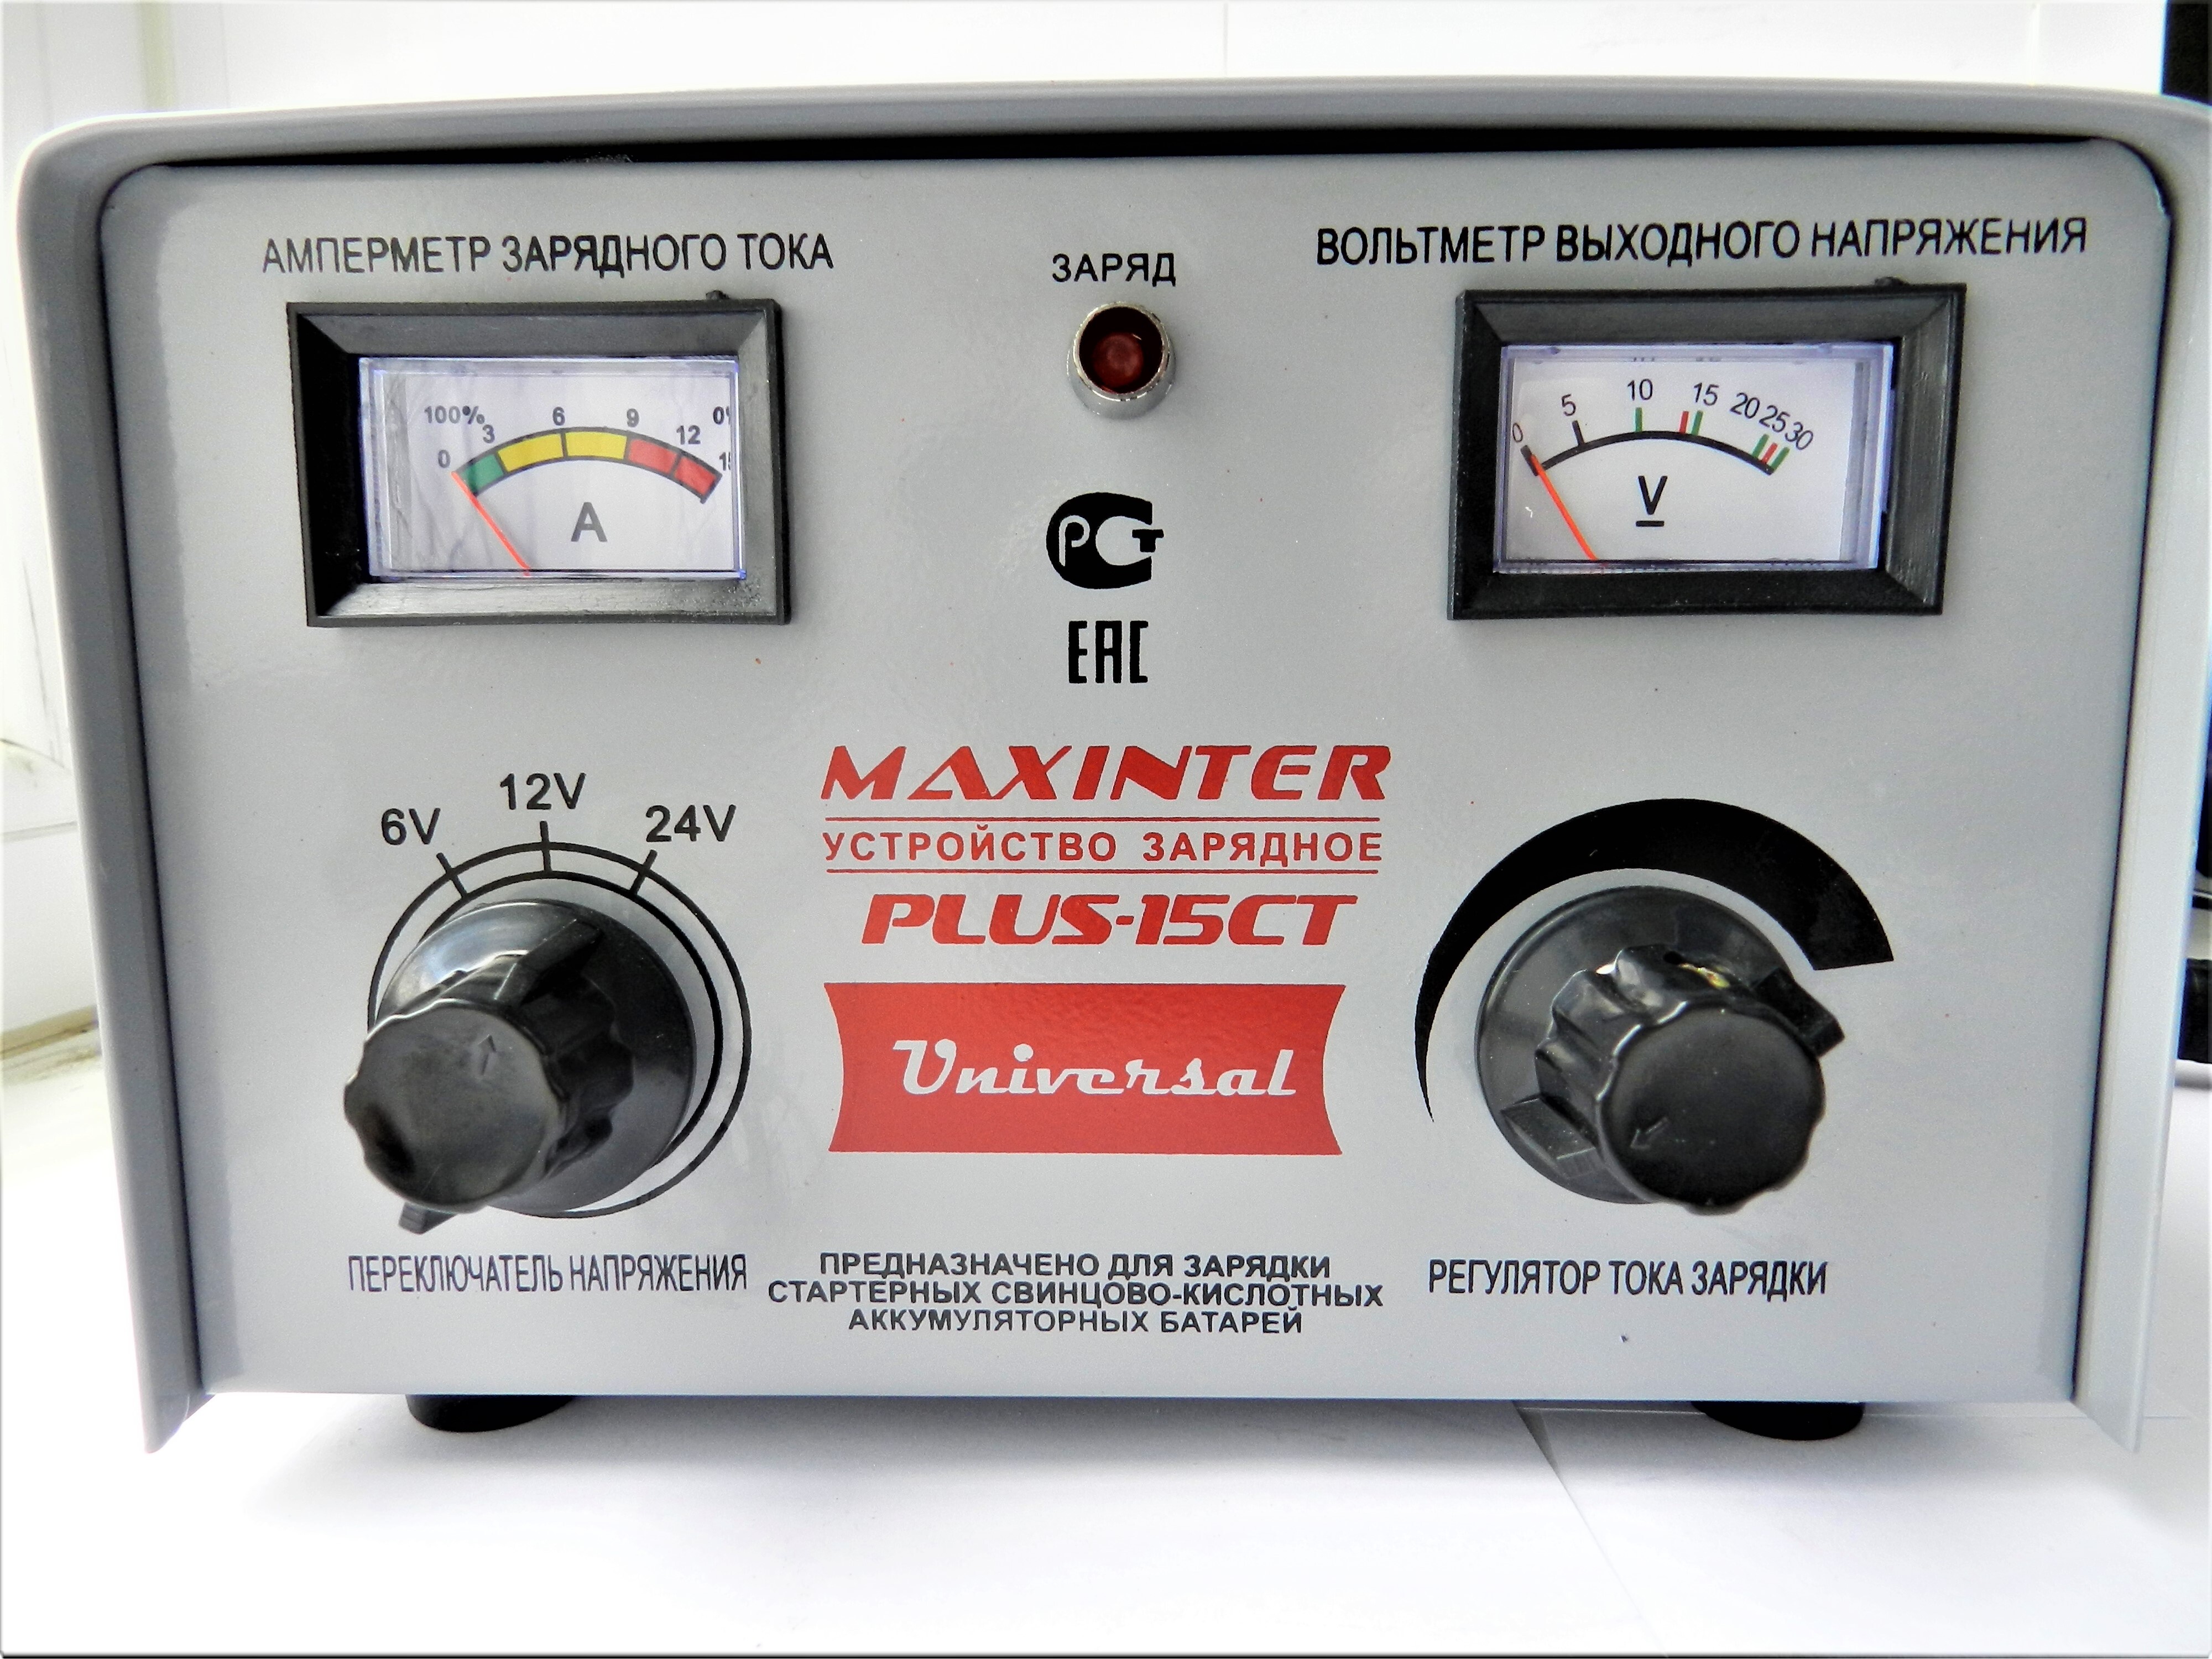 Максинтер зарядное. Maxinter Plus-15ct. Зарядное устройство Maxinter Plus-15ct. Зарядное устройство ЗУ Maxinter Plus-15. Maxinter Plus 15ct Universal 6-12-24v.